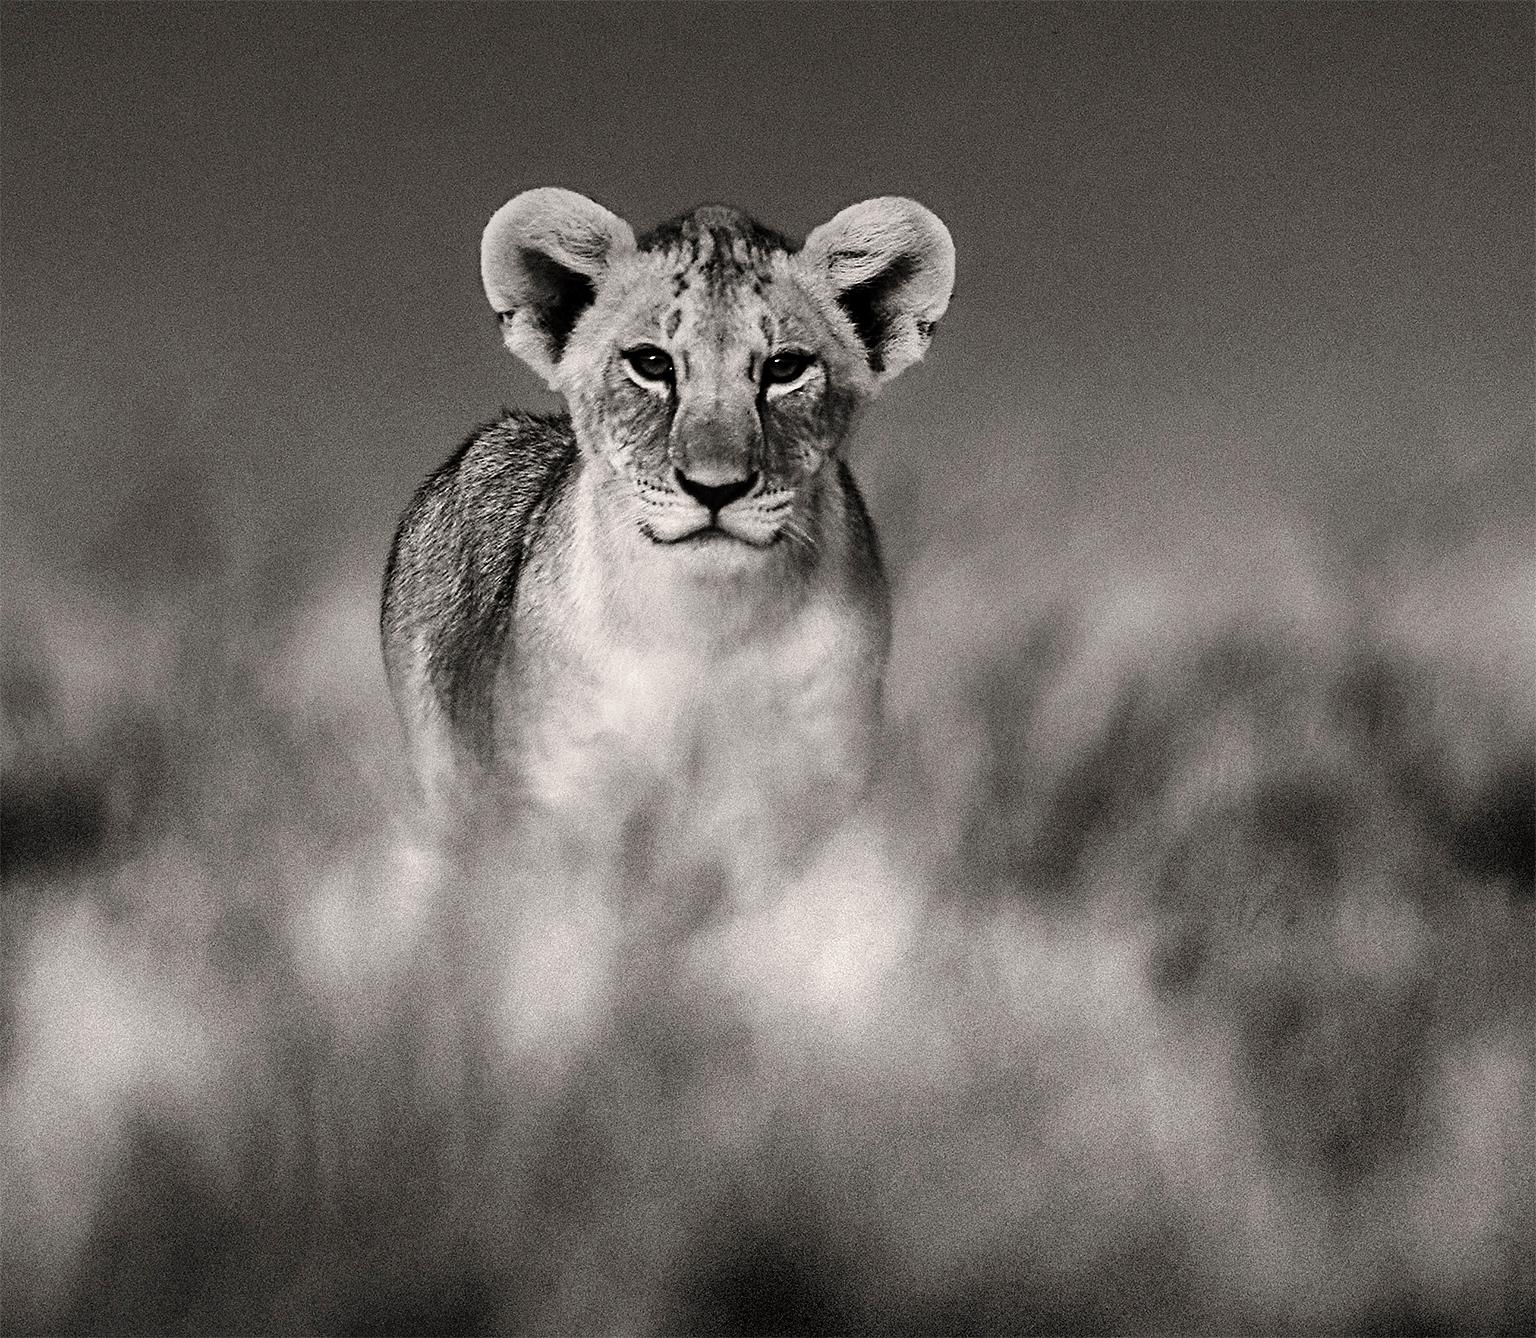 Huey, Dewey und Louie, Kenya, Löwe, Wildtiere, Fotografie – Photograph von Joachim Schmeisser